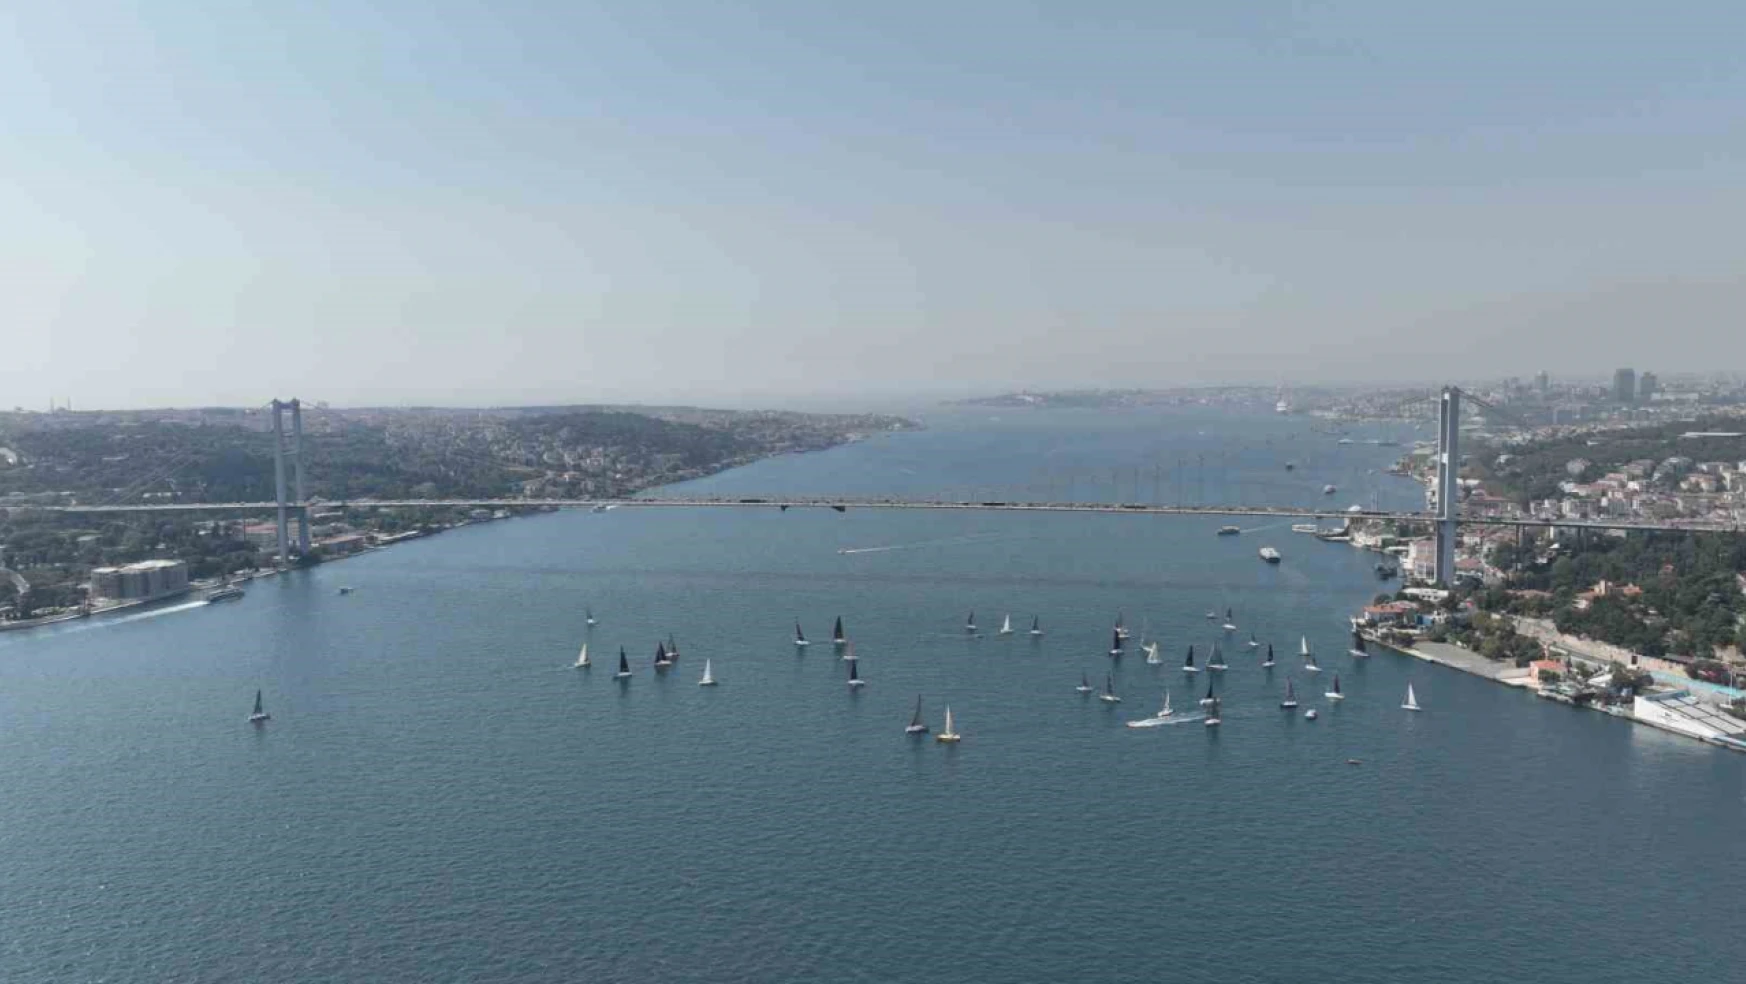 İstanbul Boğazı'nda yapılan yelkenli yarışı kartpostallık görüntüler oluşturdu